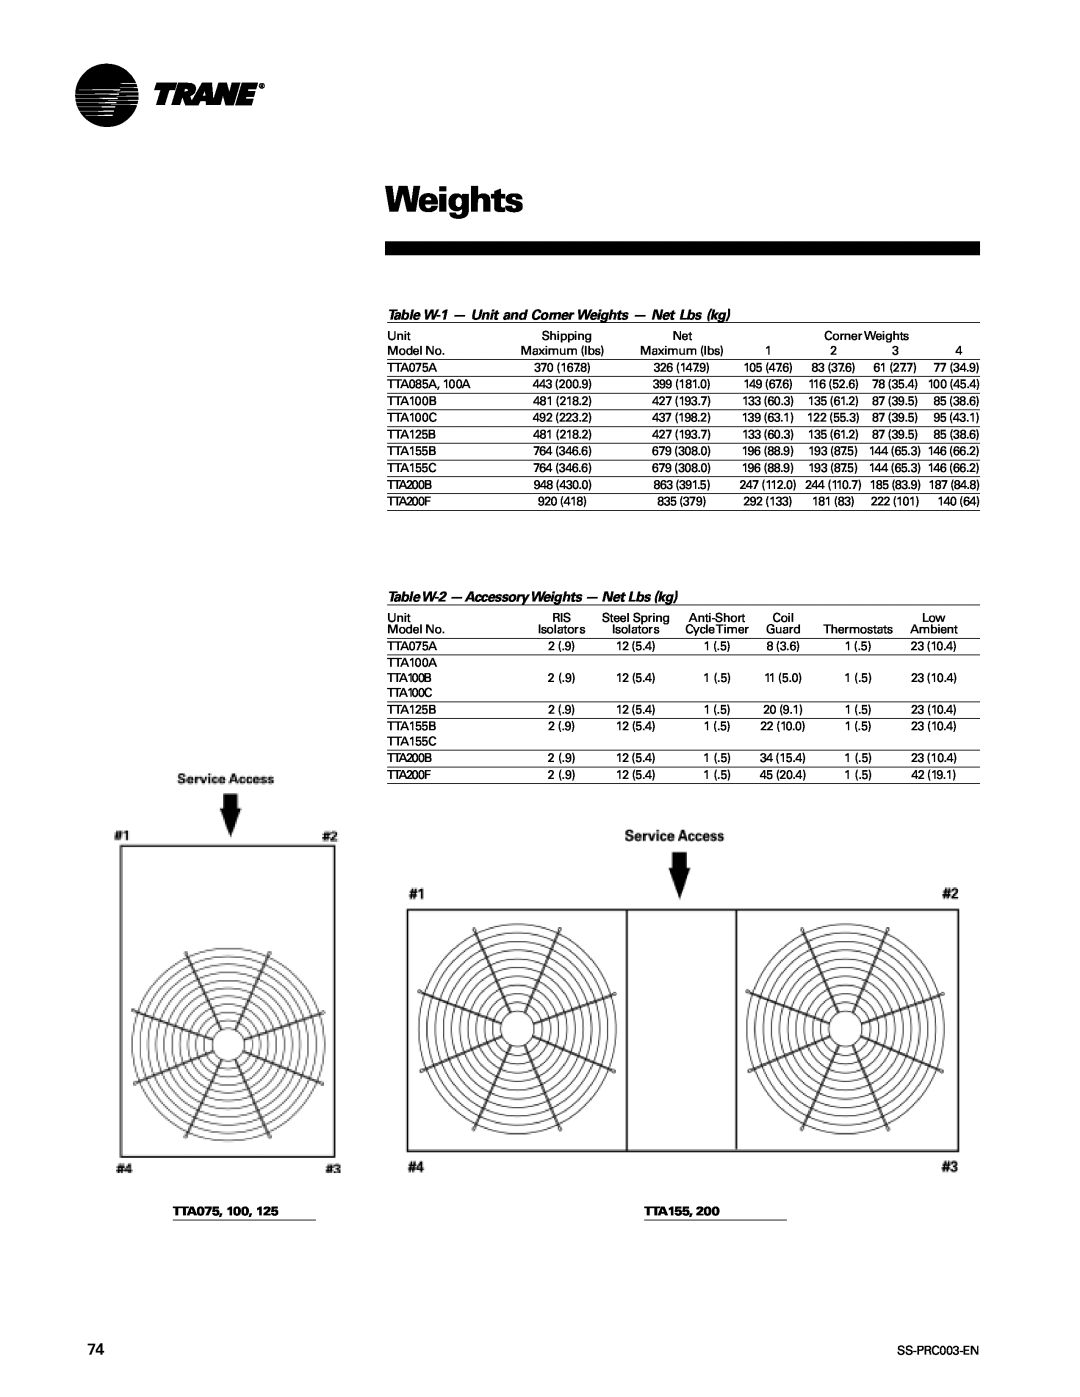 Trane SS-PRC003-EN Table W-1- Unit and Corner Weights - Net Lbs kg, TableW-2- AccessoryWeights - Net Lbs kg, TTA075 